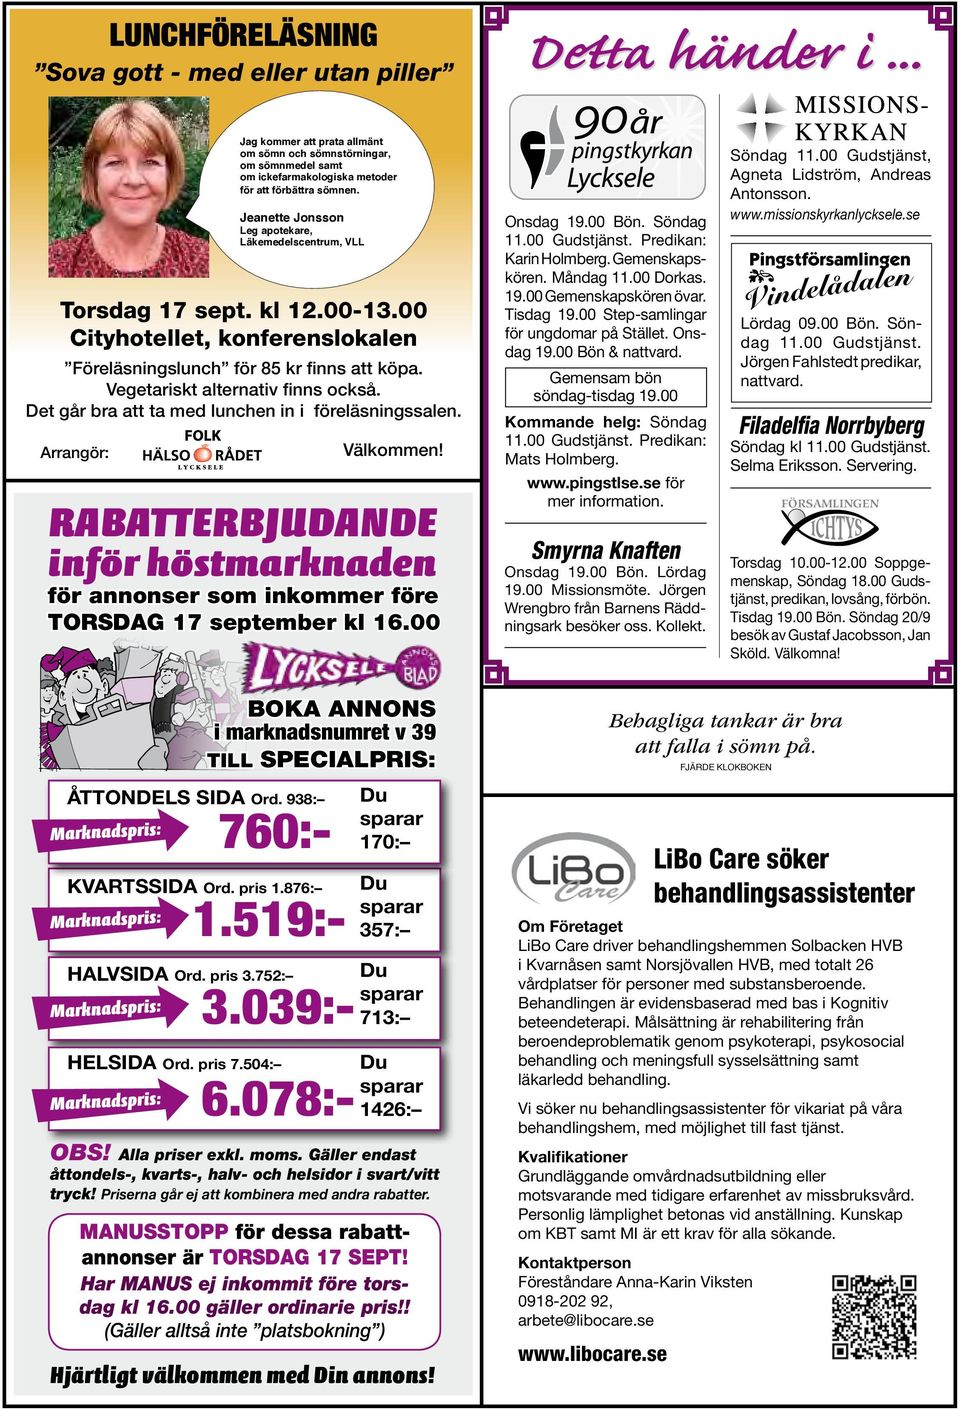 Jeanette Jonsson Leg apotekare, Läkemedelscentrum, VLL Torsdag 17 september 17 sept. kl 12.00-13.00 Kl 12.00 Cityhotellet, 13.